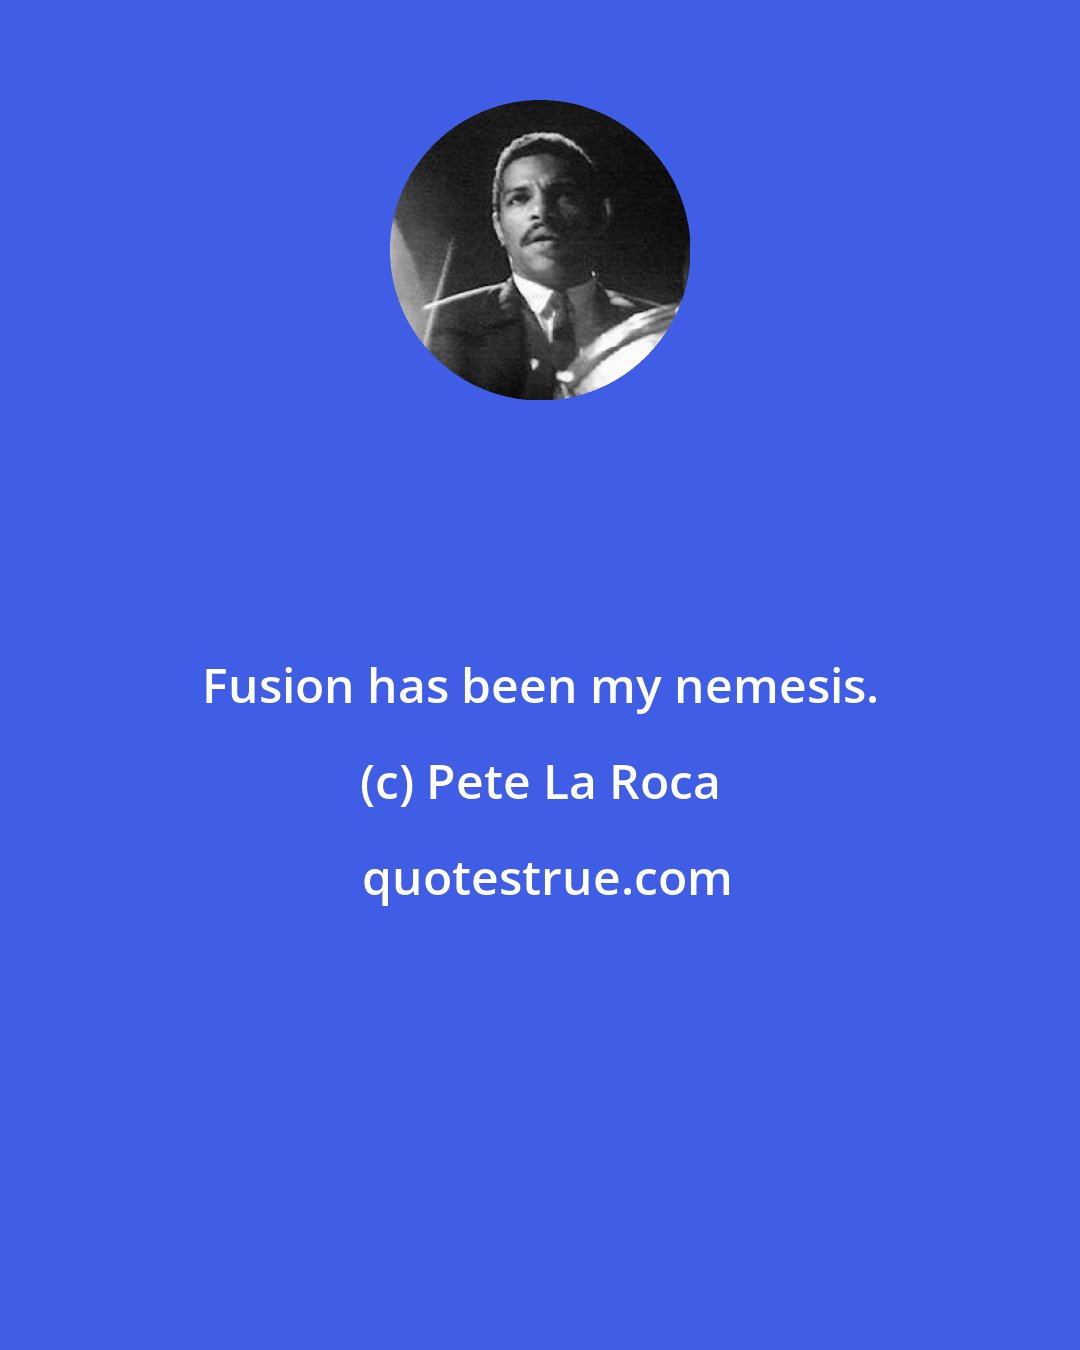 Pete La Roca: Fusion has been my nemesis.